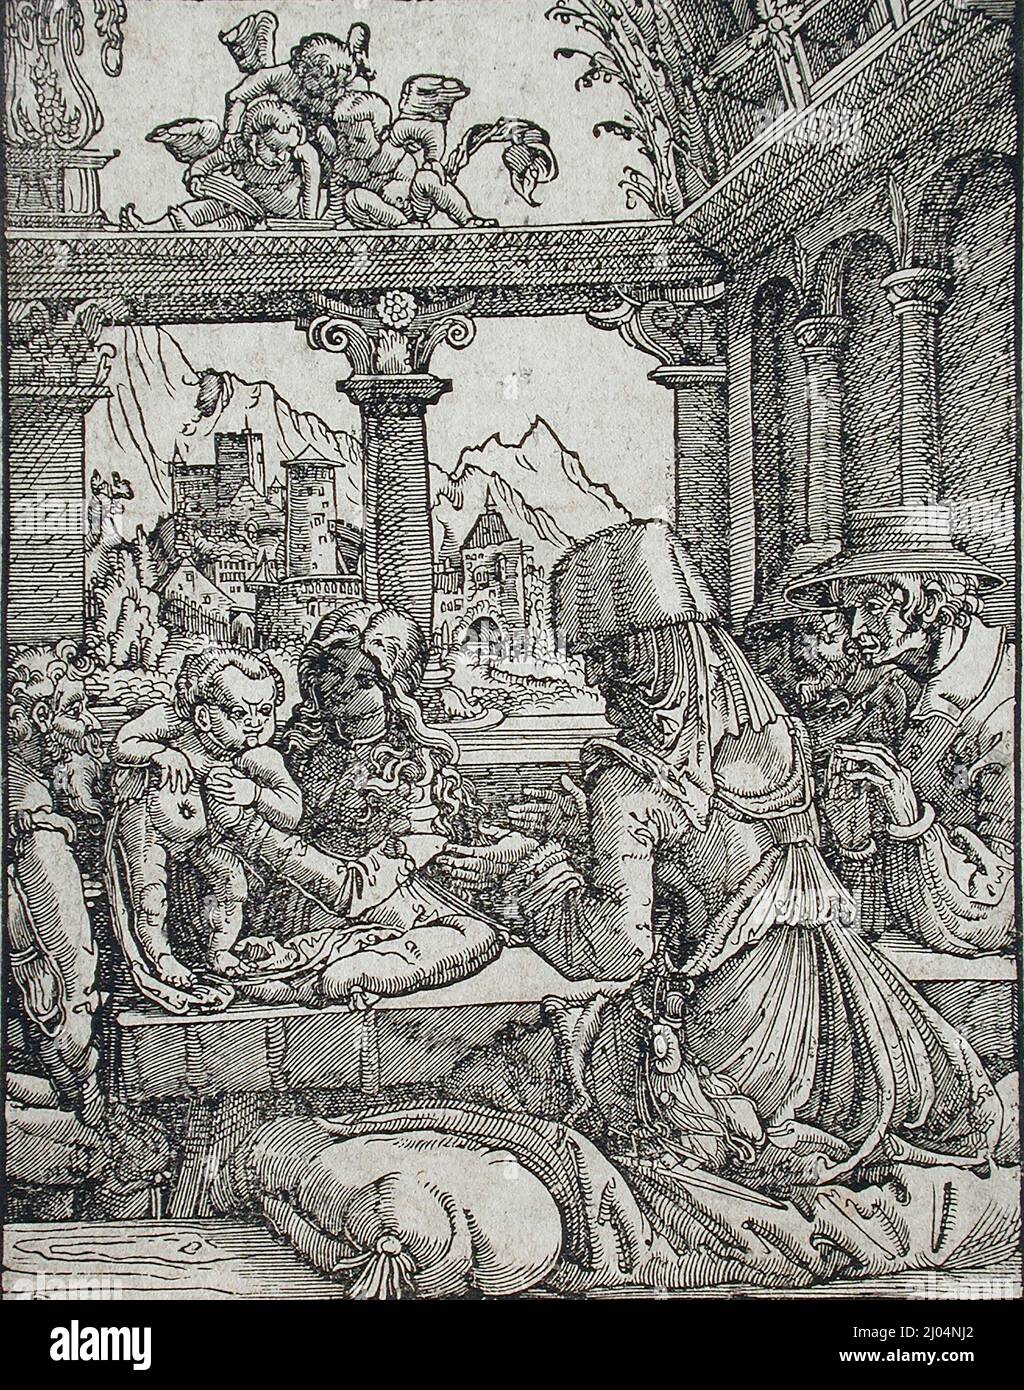 El Santo Kinship. Albrecht Altdorfer (Alemania, alrededor de 1480-1538). Alemania, alrededor de 1520. Impresiones; cortes de madera. Corte de madera Foto de stock